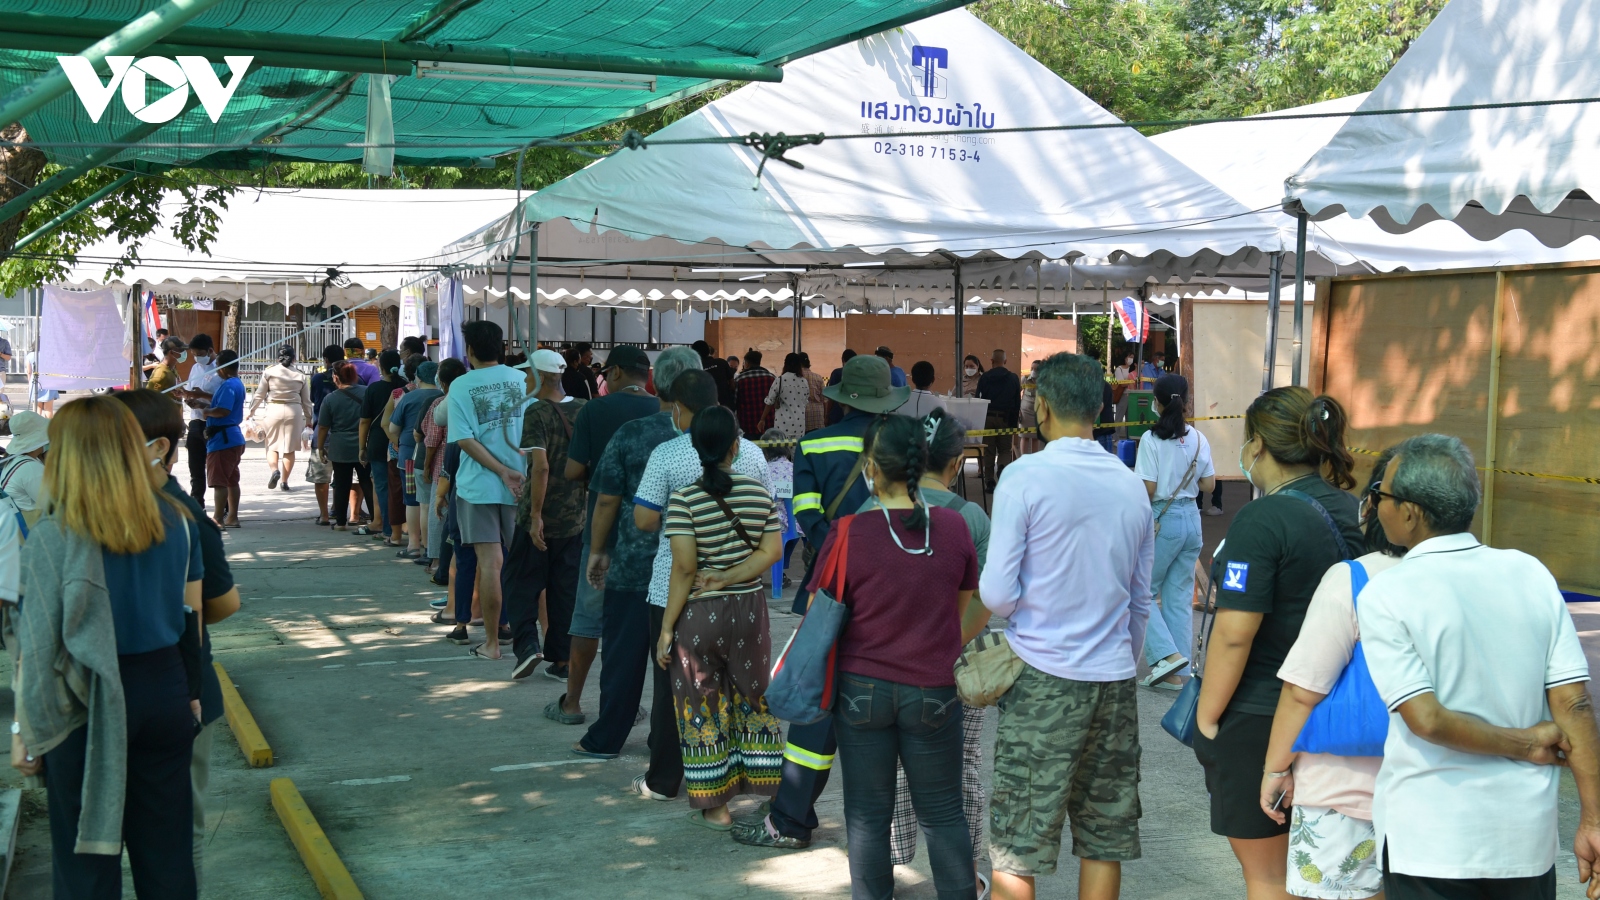 Tổng tuyển cử Thái Lan: Đảng Tiến bước tạm thời dẫn đầu